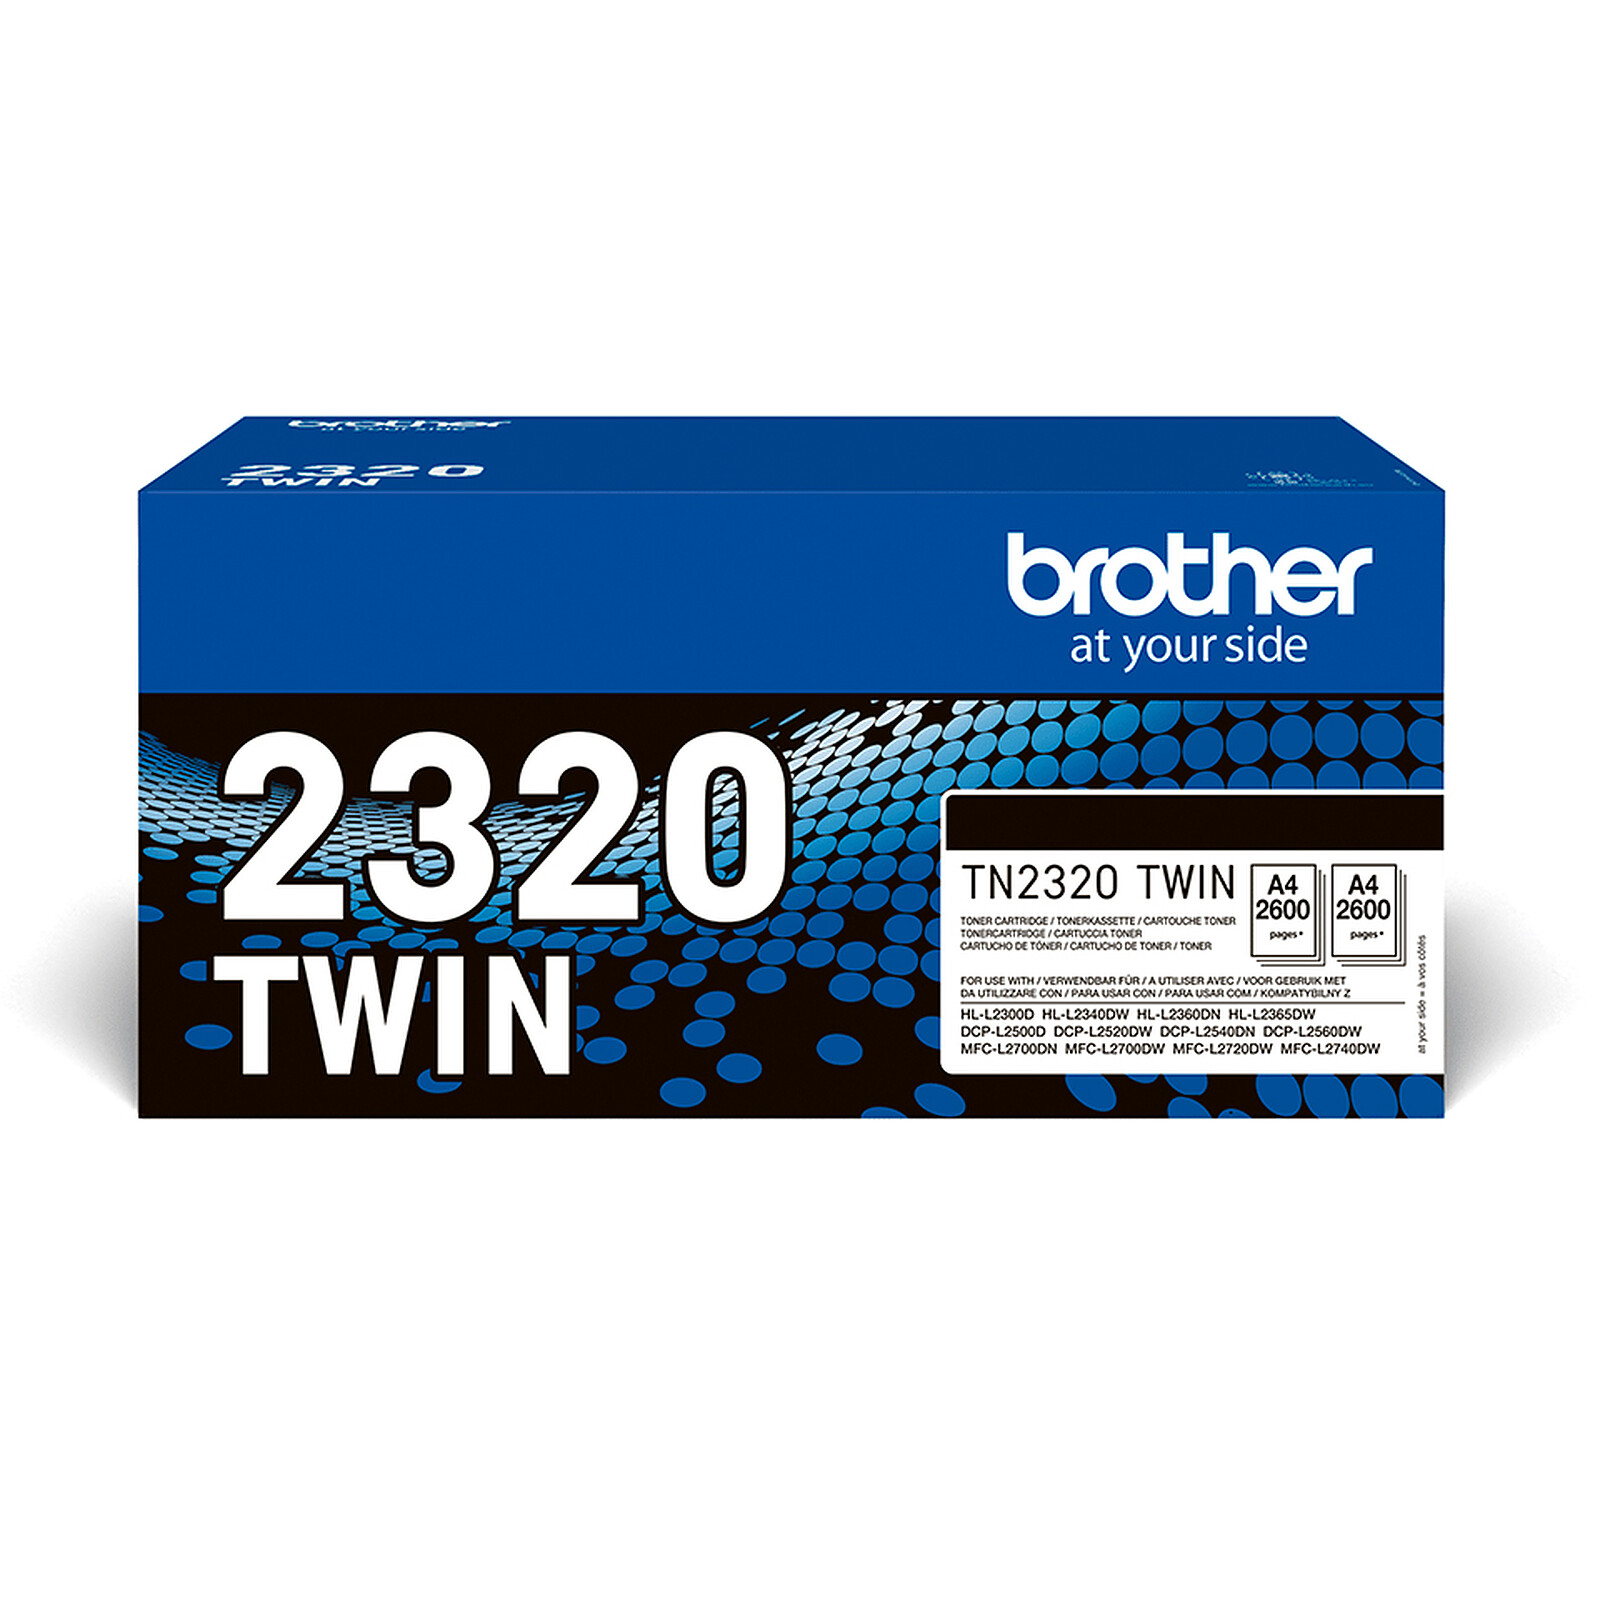 regla También anchura Brother TN-2320 Twin Pack (negro) - Tóner para impresora Brother en LDLC